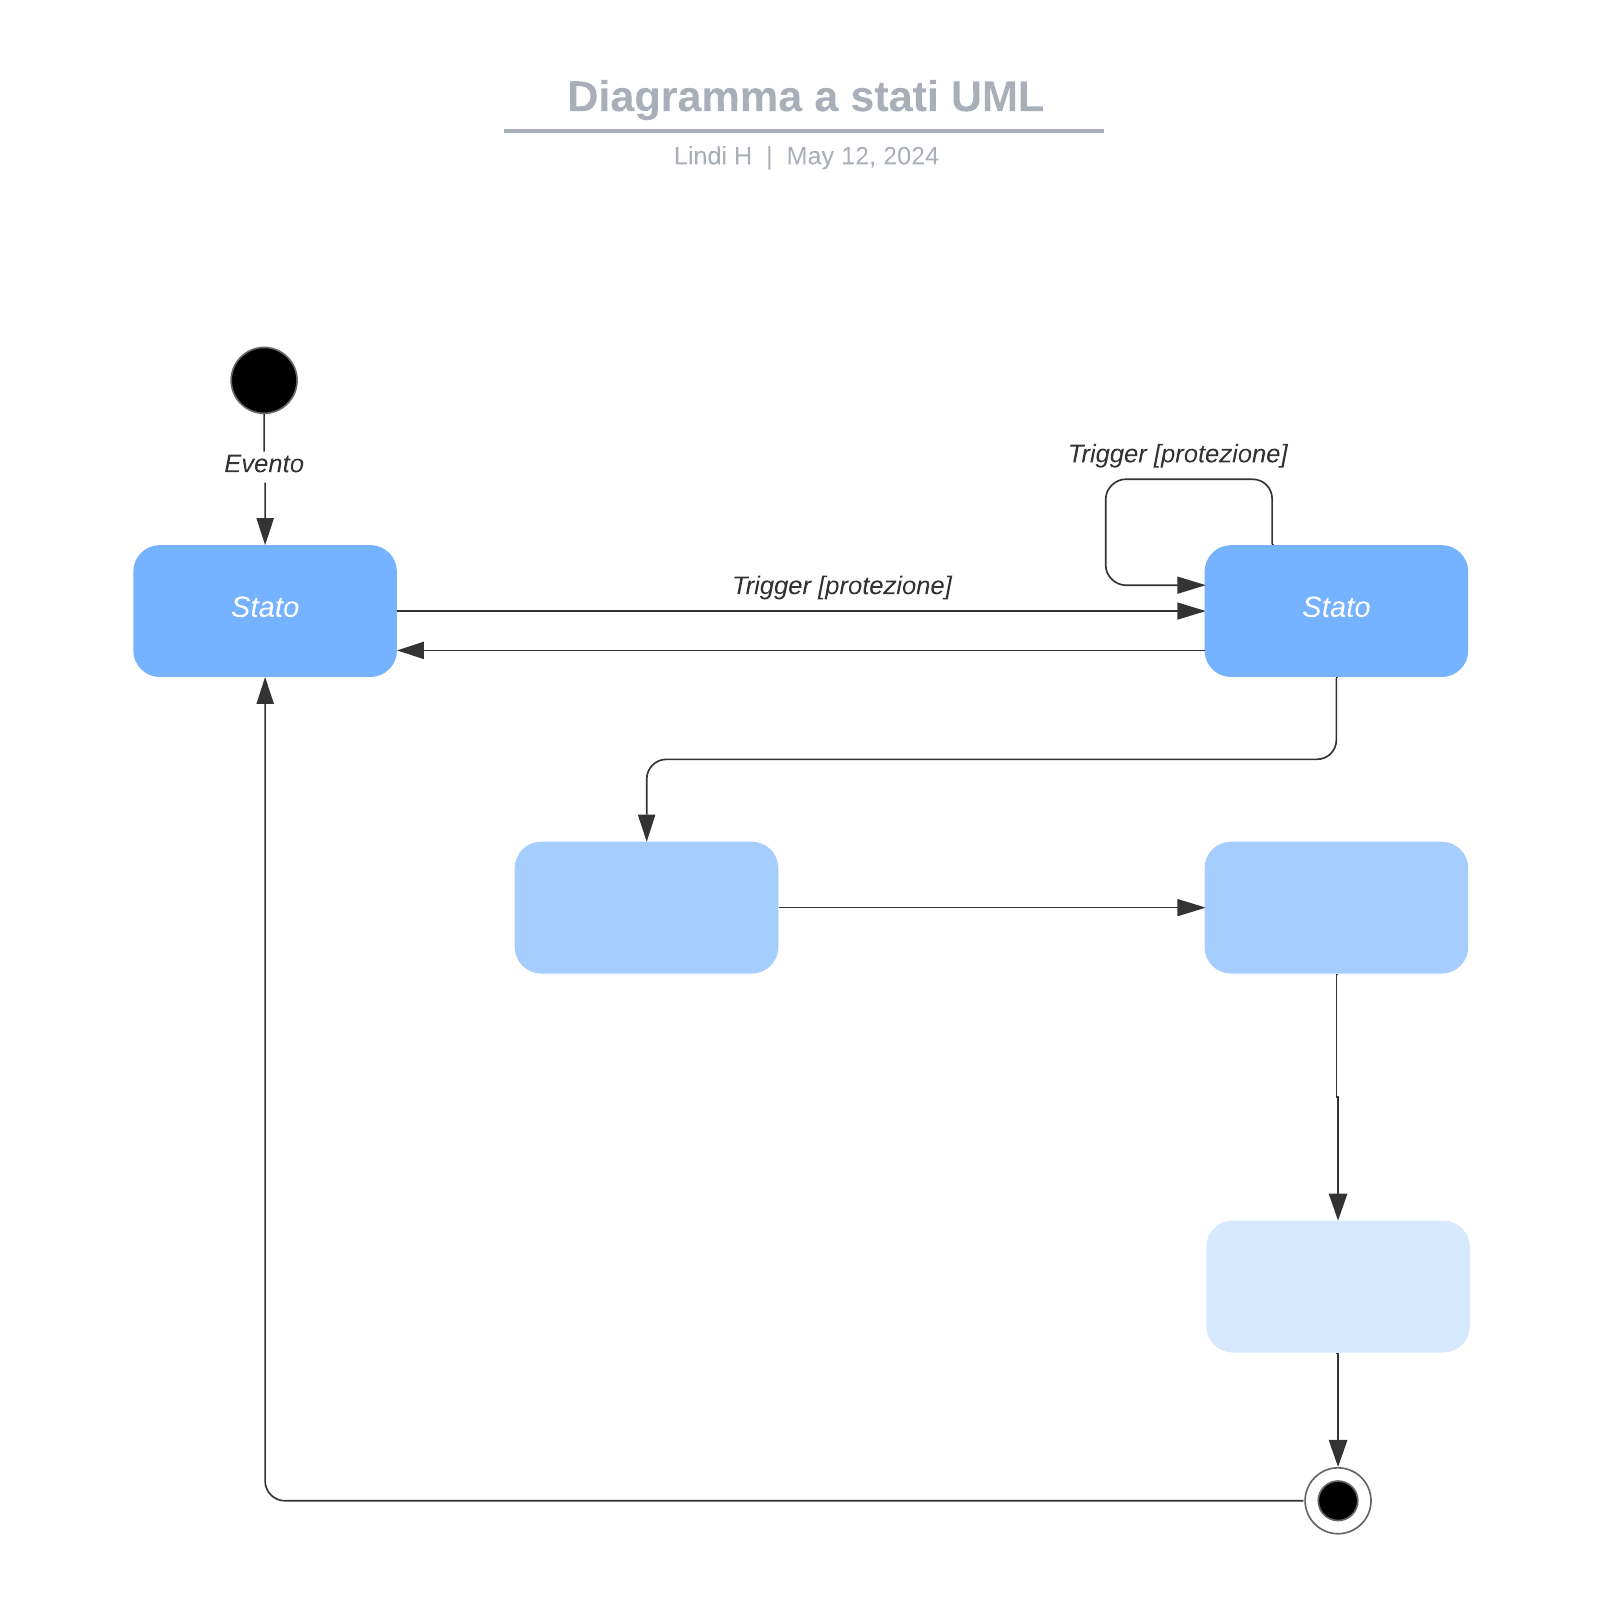 Diagramma a stati UML example